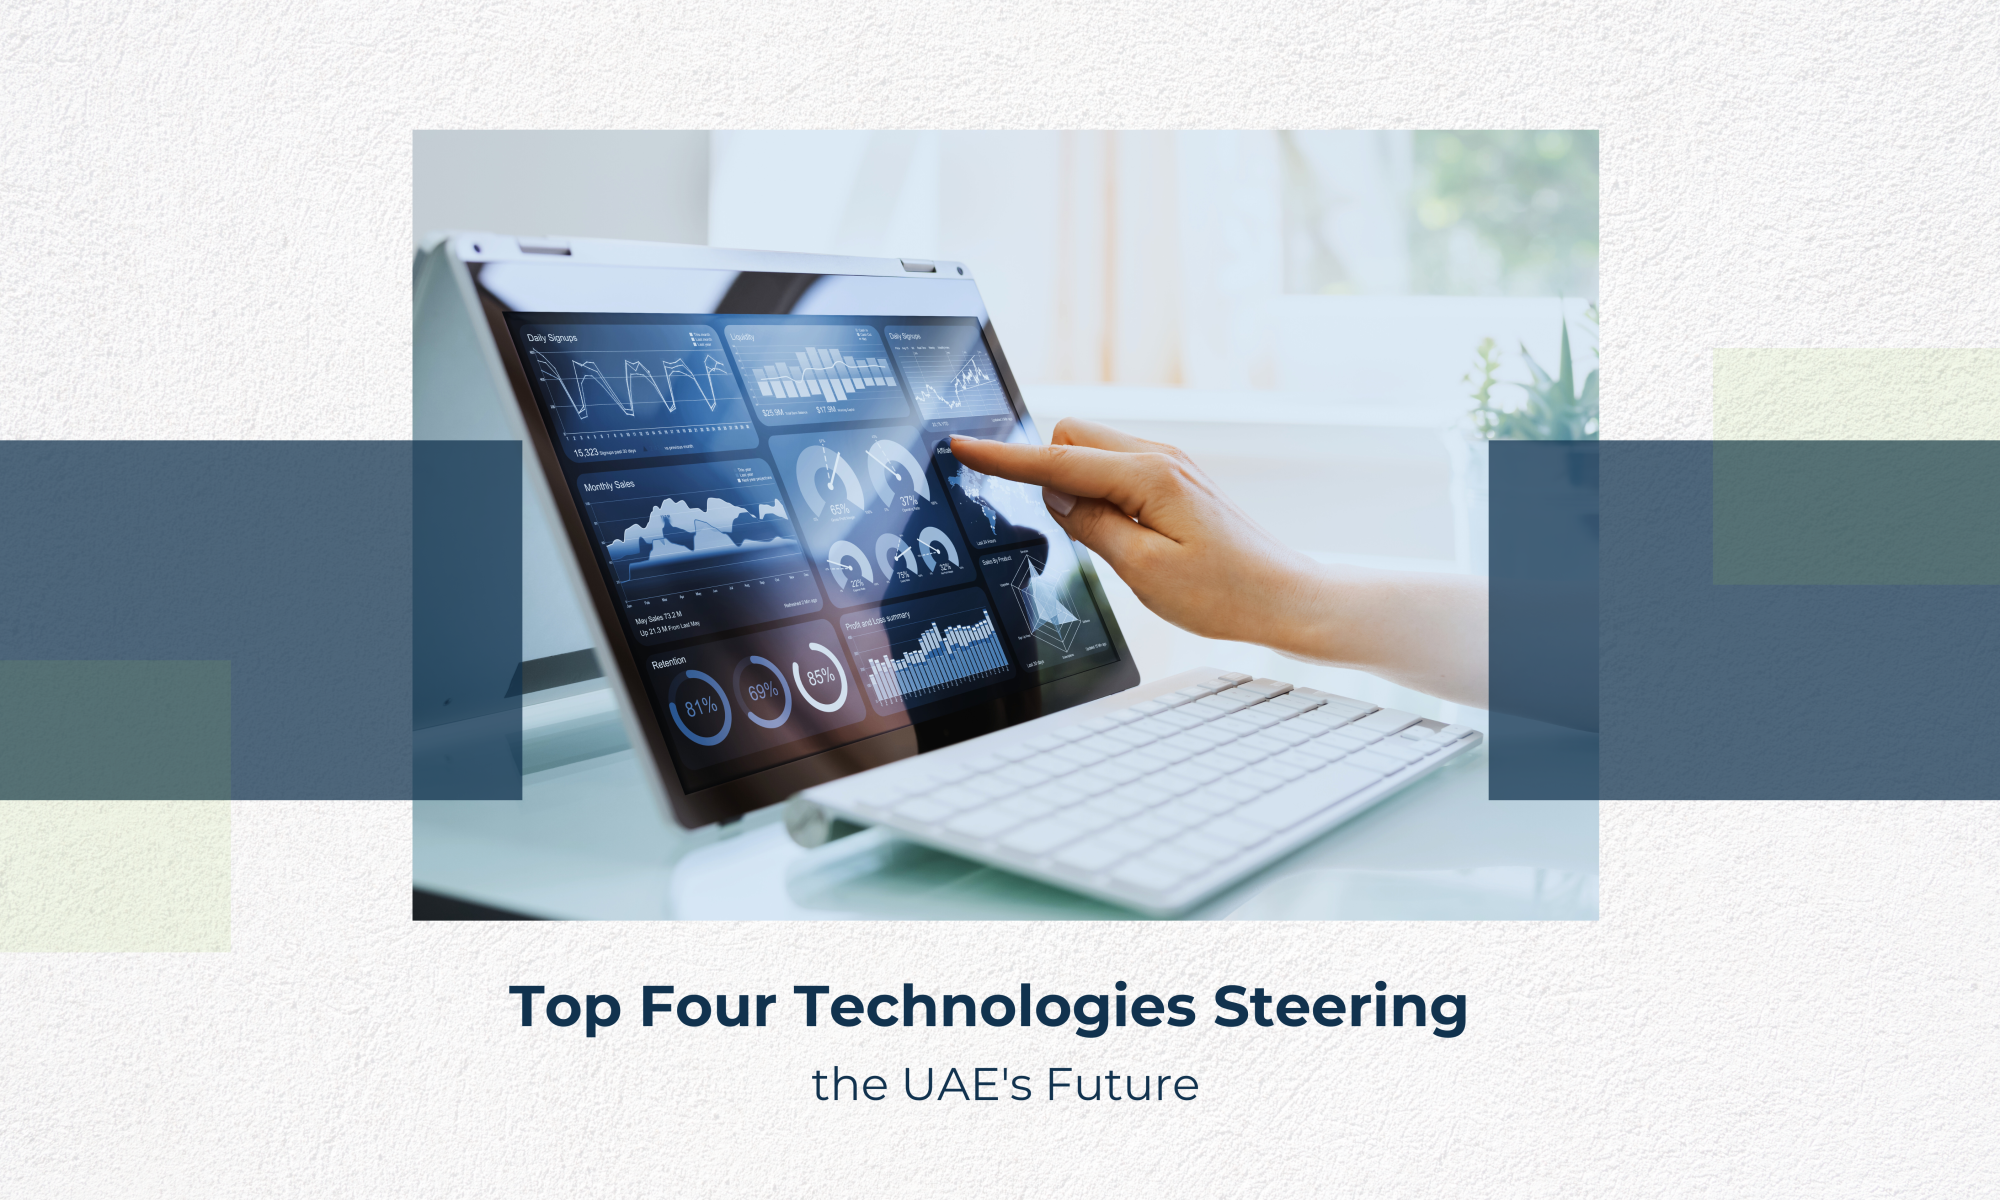 top 4 technologies in uae